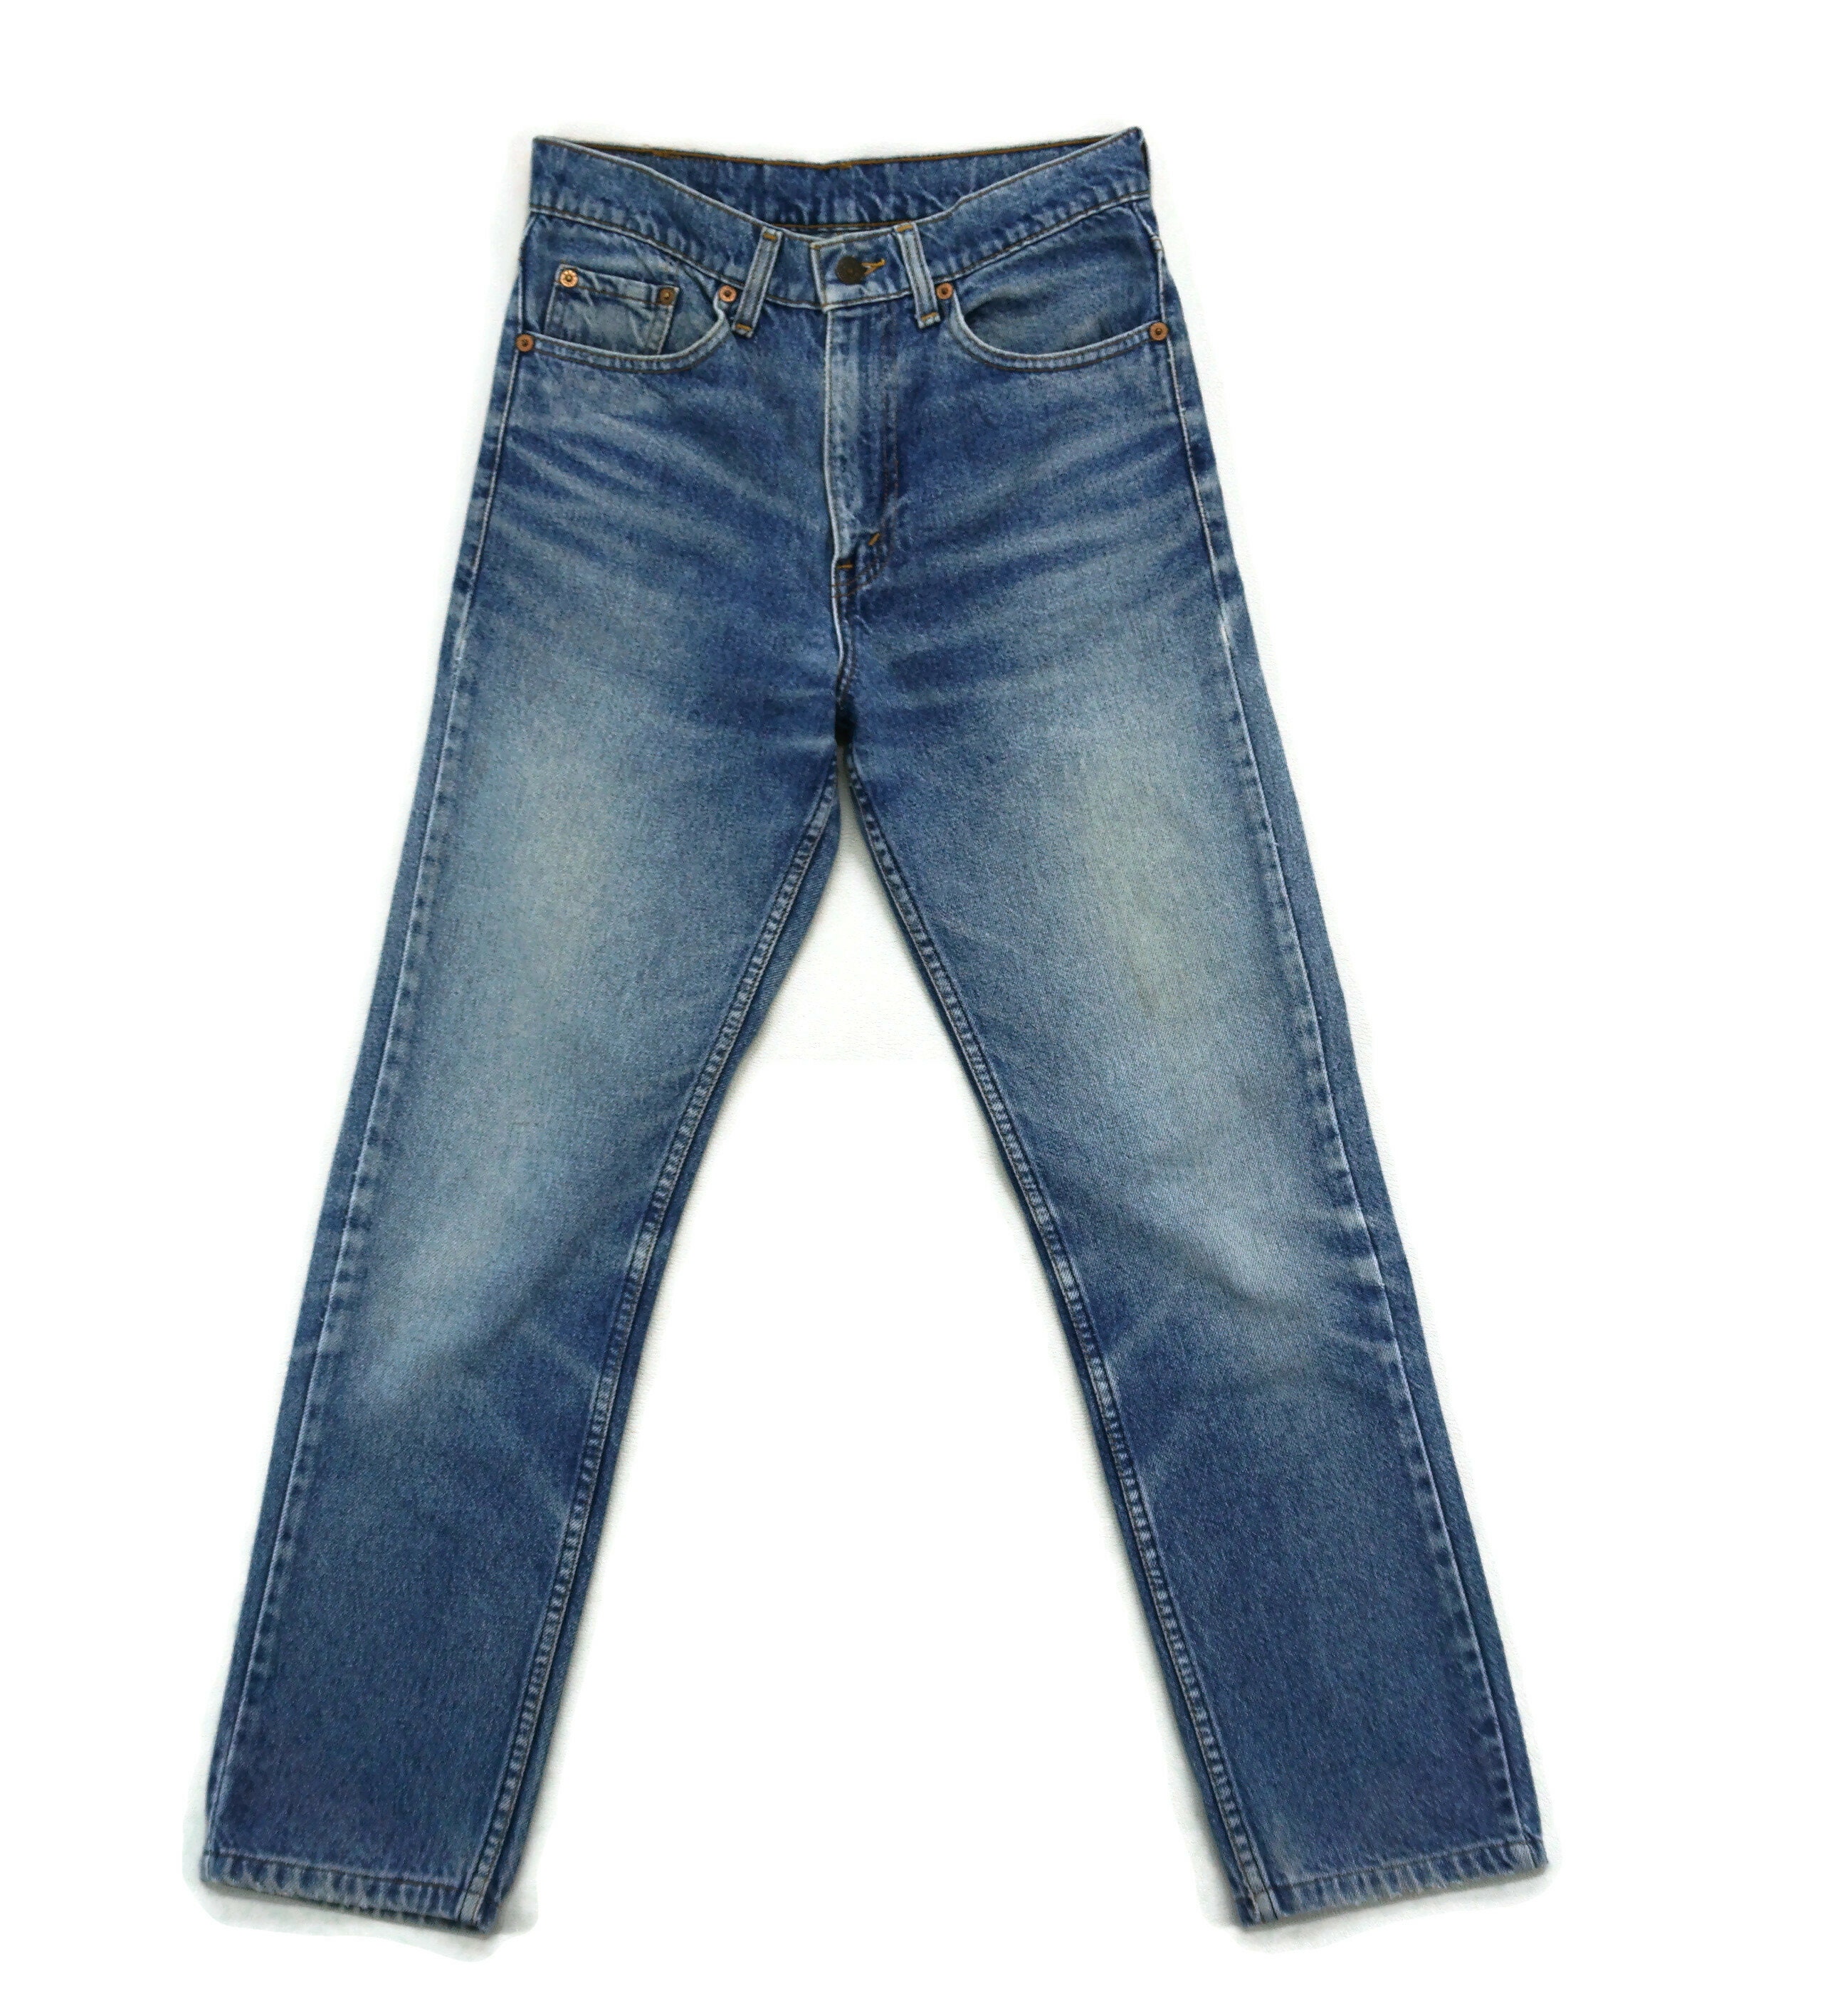 Levis 606 Jeans Size W27xL27 Vintage Levis 606-0217 High Rise | Etsy